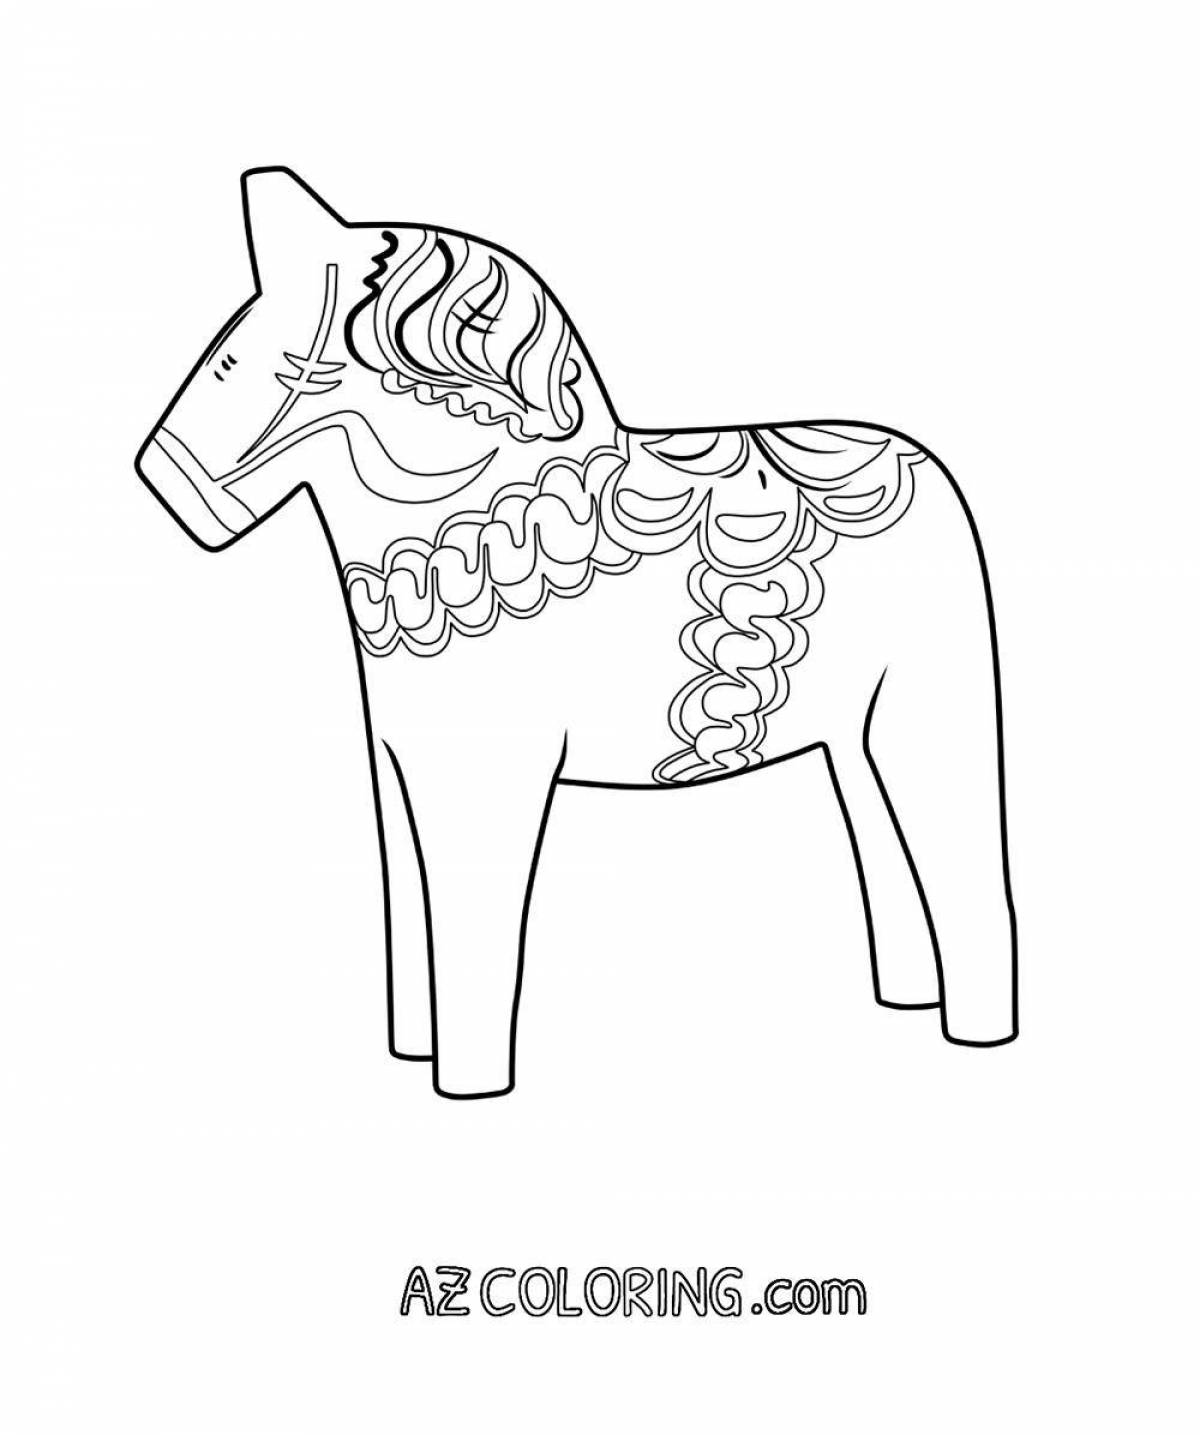 Фото Жирная раскраска городецкая лошадь